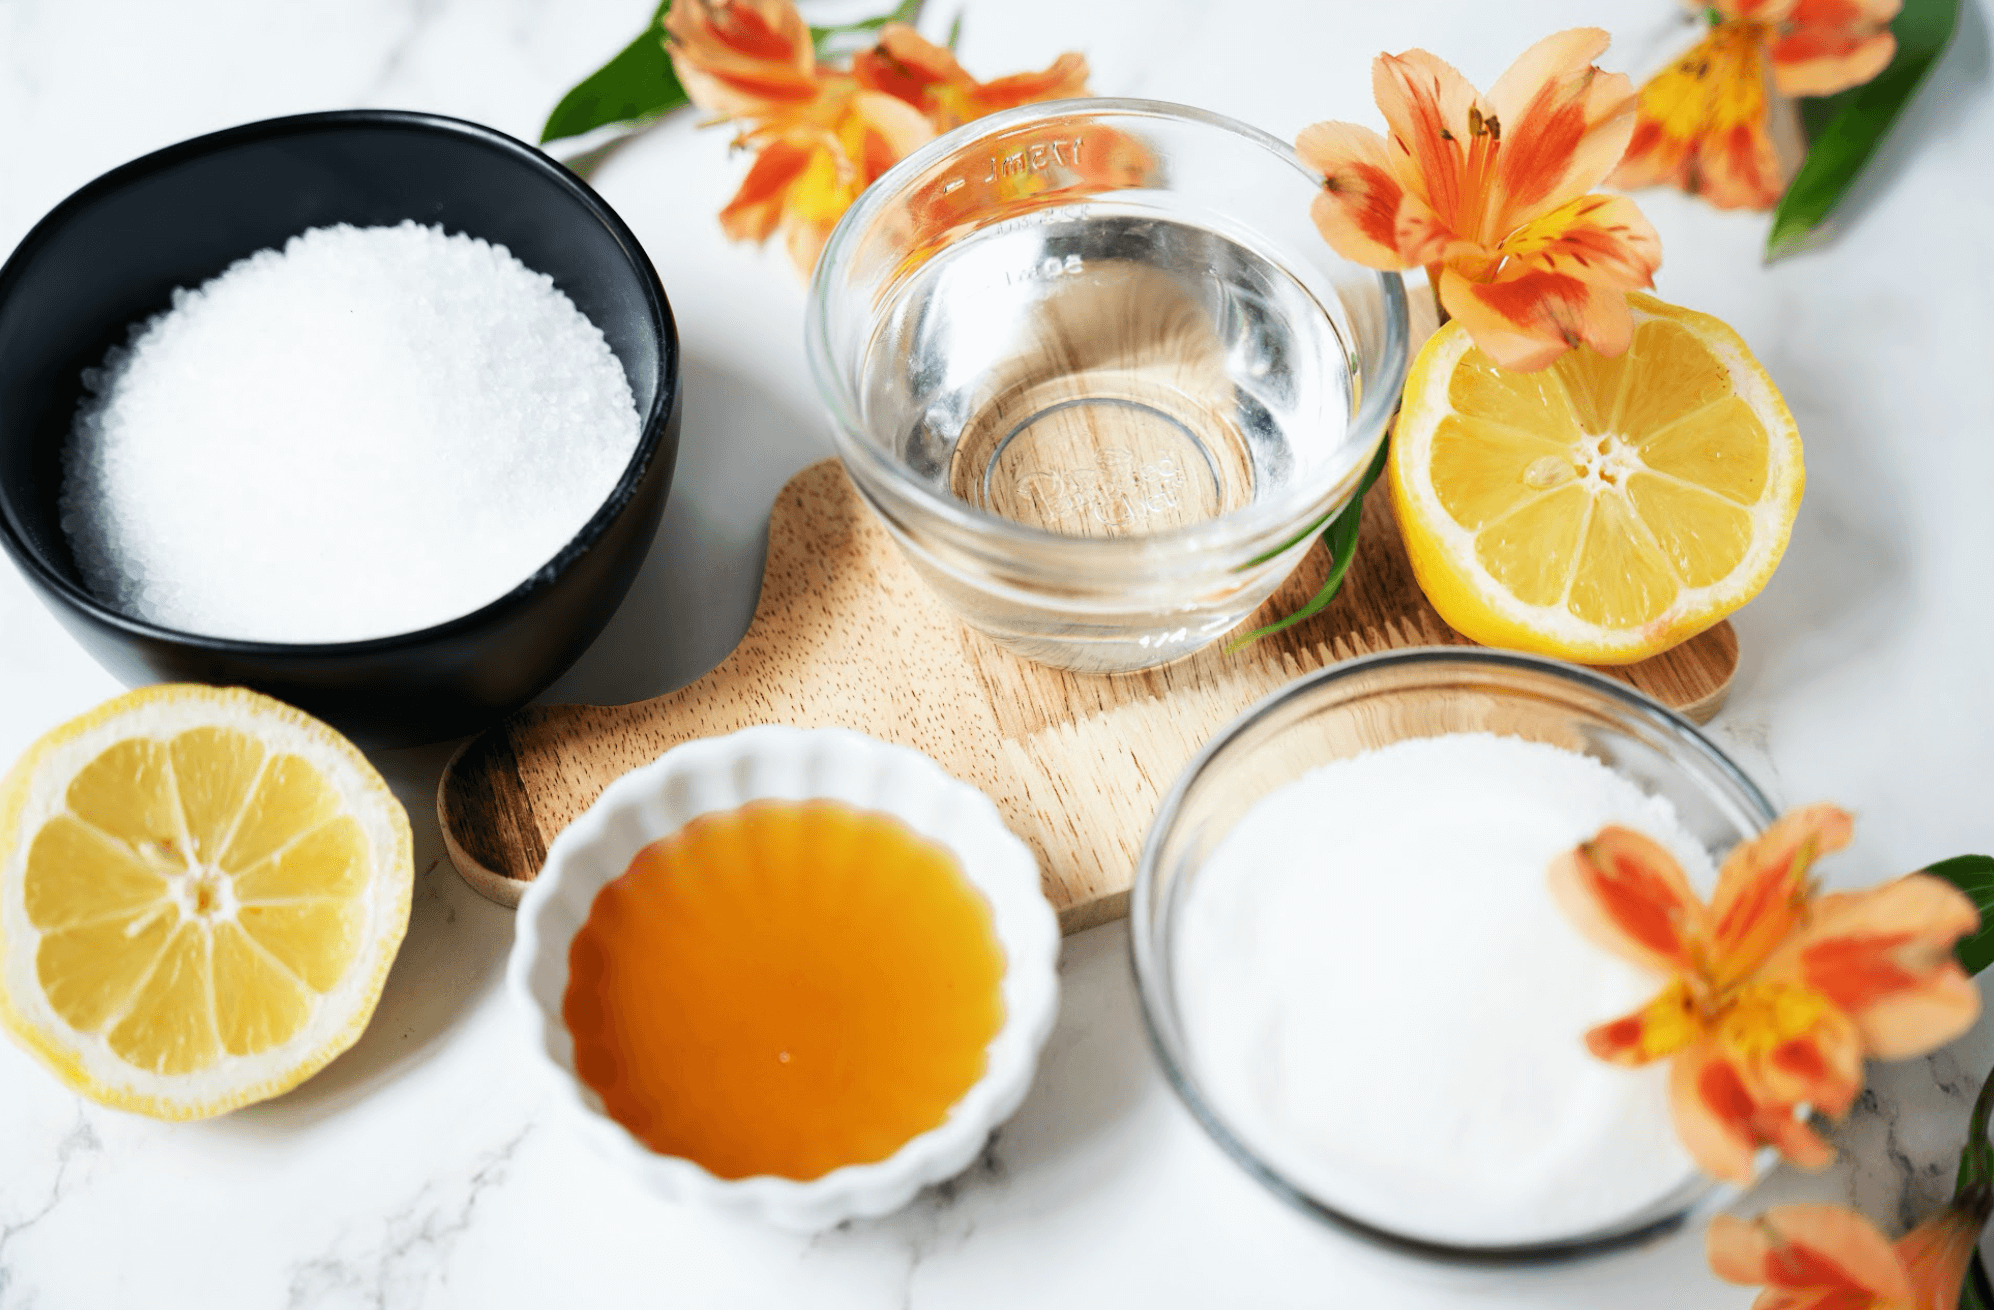 Ingredients DIY Lemon Foot Scrub